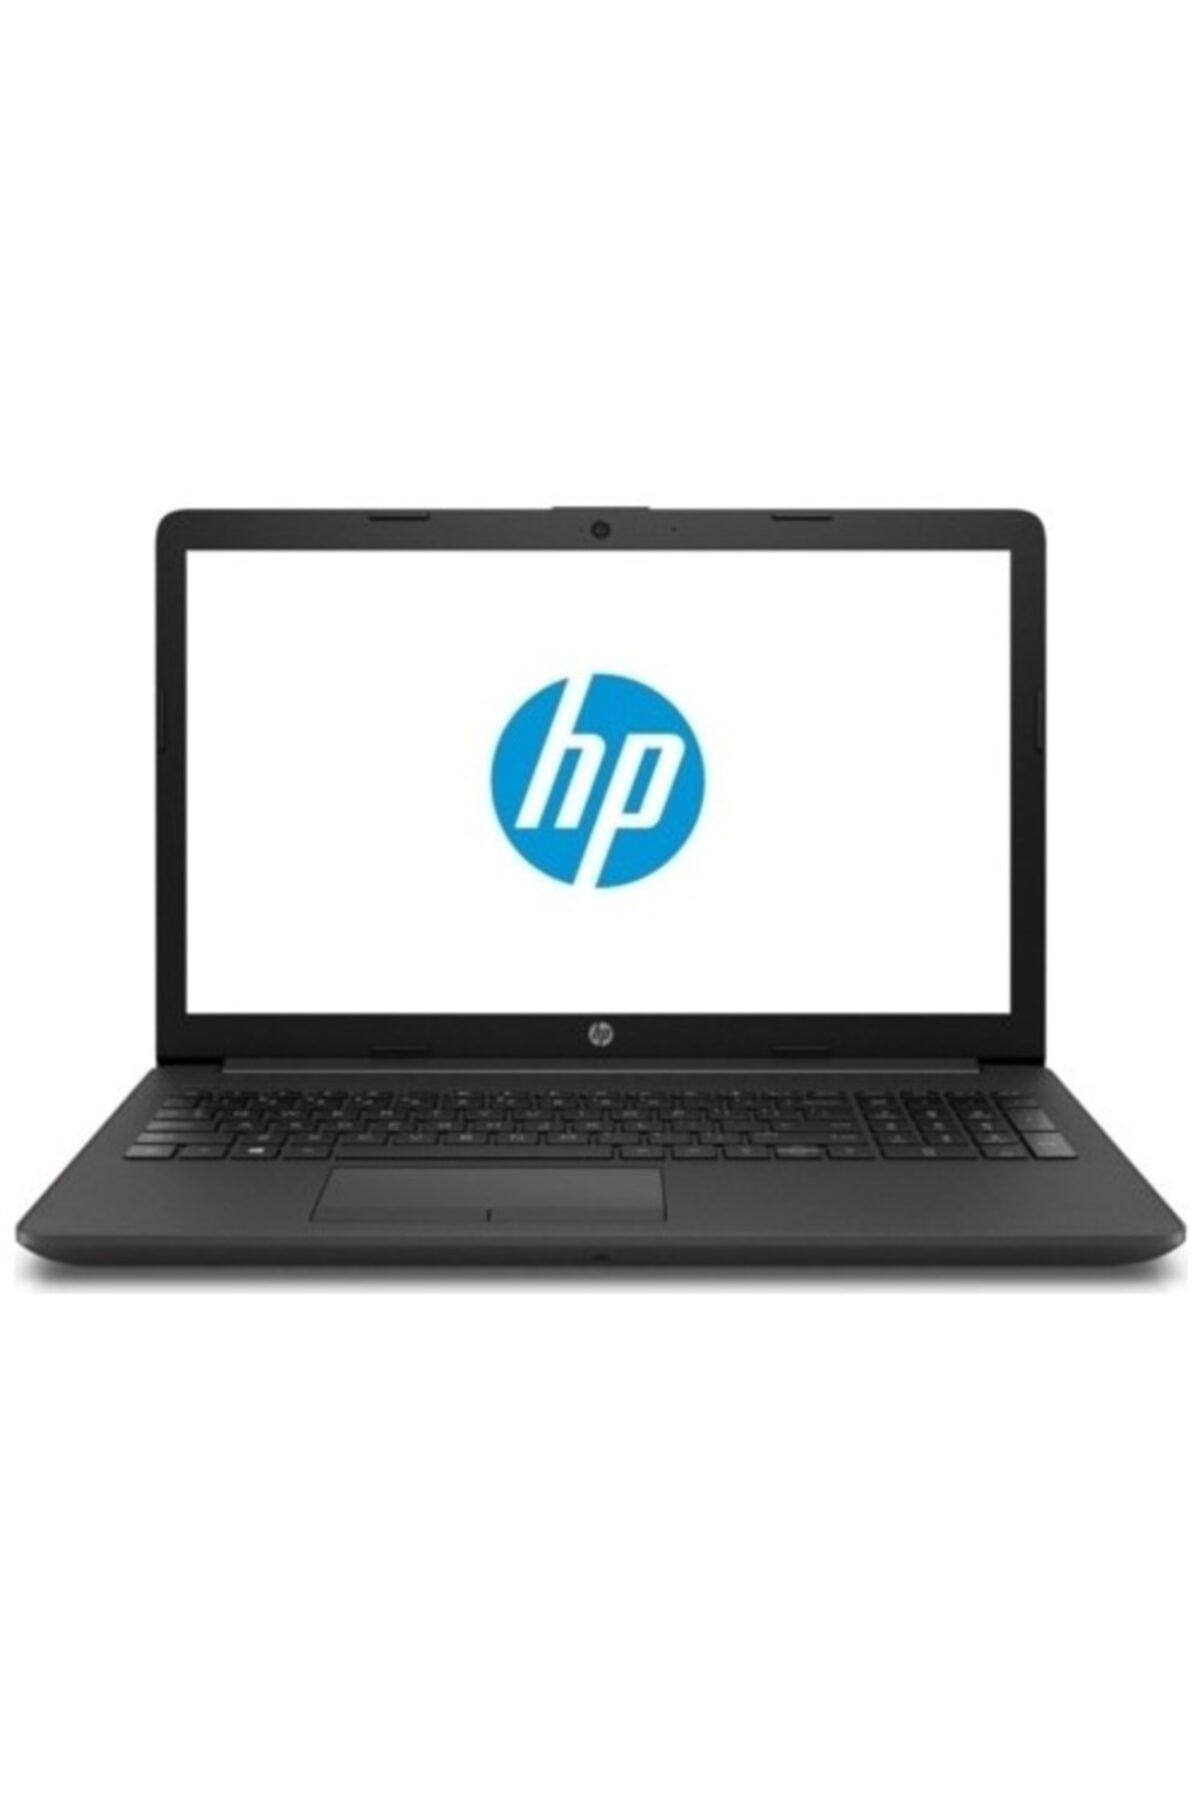 HP 1q3n1es I5-1035g1 15.6" Fhd, 8gb Ram, 256gb Ssd, 2gb Mx110 Ekran Kartı, Windows 10 Pro Notebook